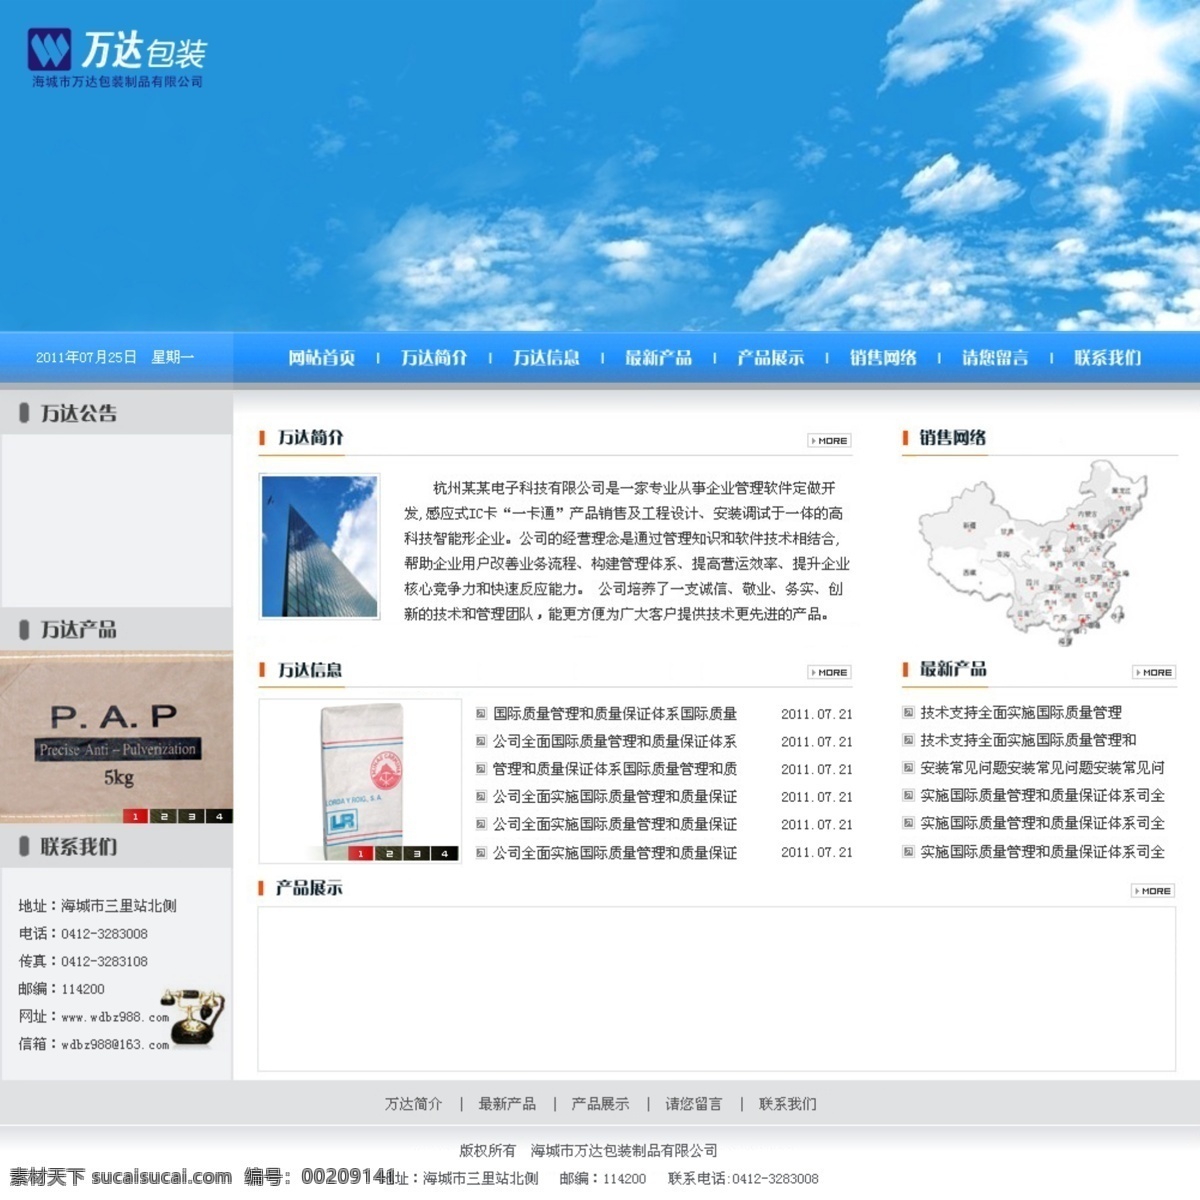 包装 包装模板 蓝色模板 网页模板 源文件 中文模板 网站 模板 模板下载 包装网站模板 包装网站 网页素材